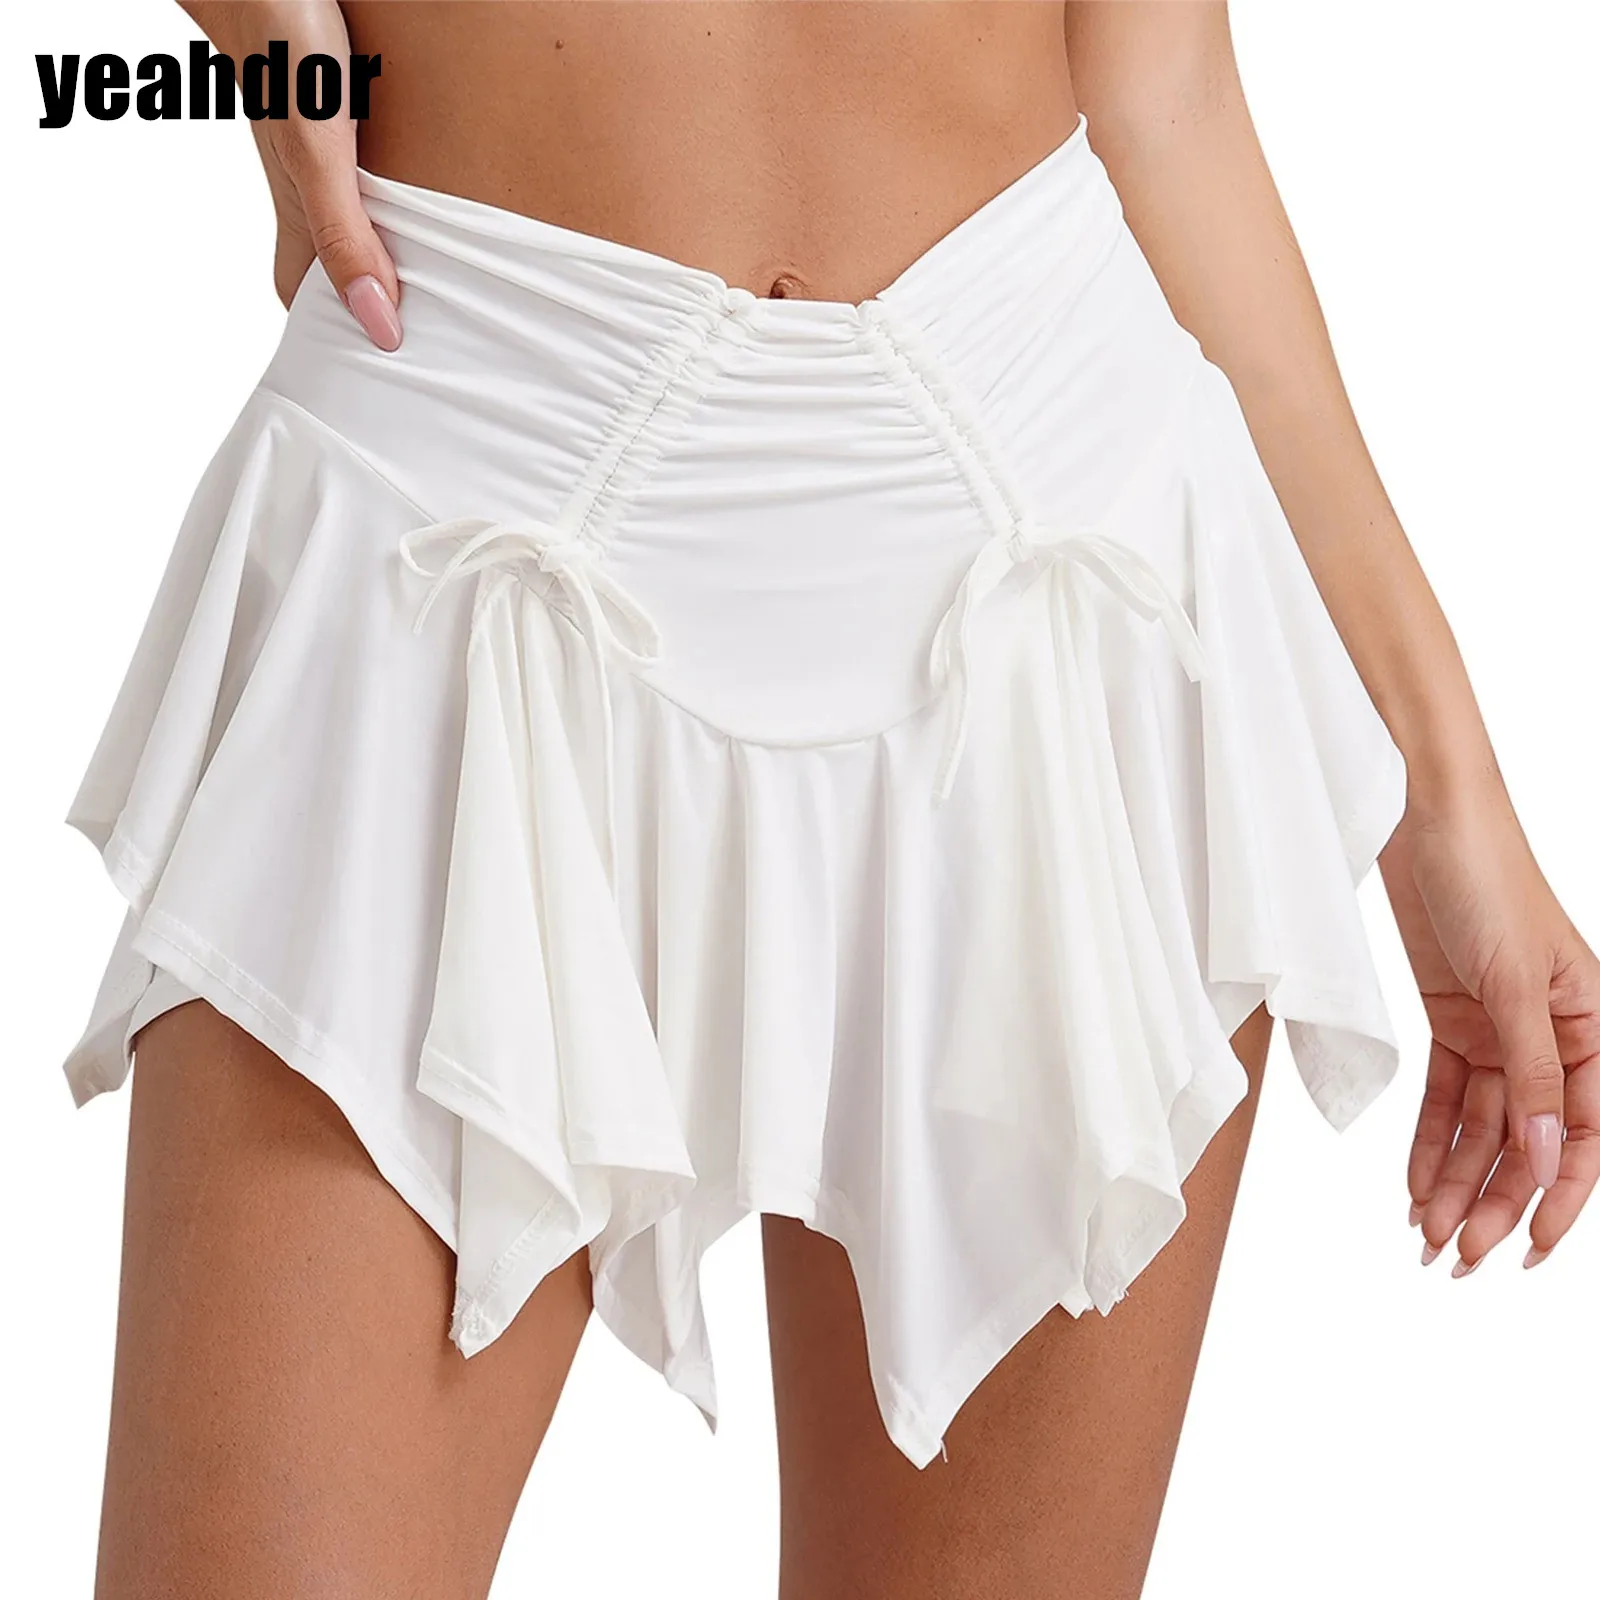 Женская готическая мини-юбка в стиле панк, плиссированная юбка с асимметричным подолом и рюшами на завязках и с защитными трусами, юбка для уличного образа